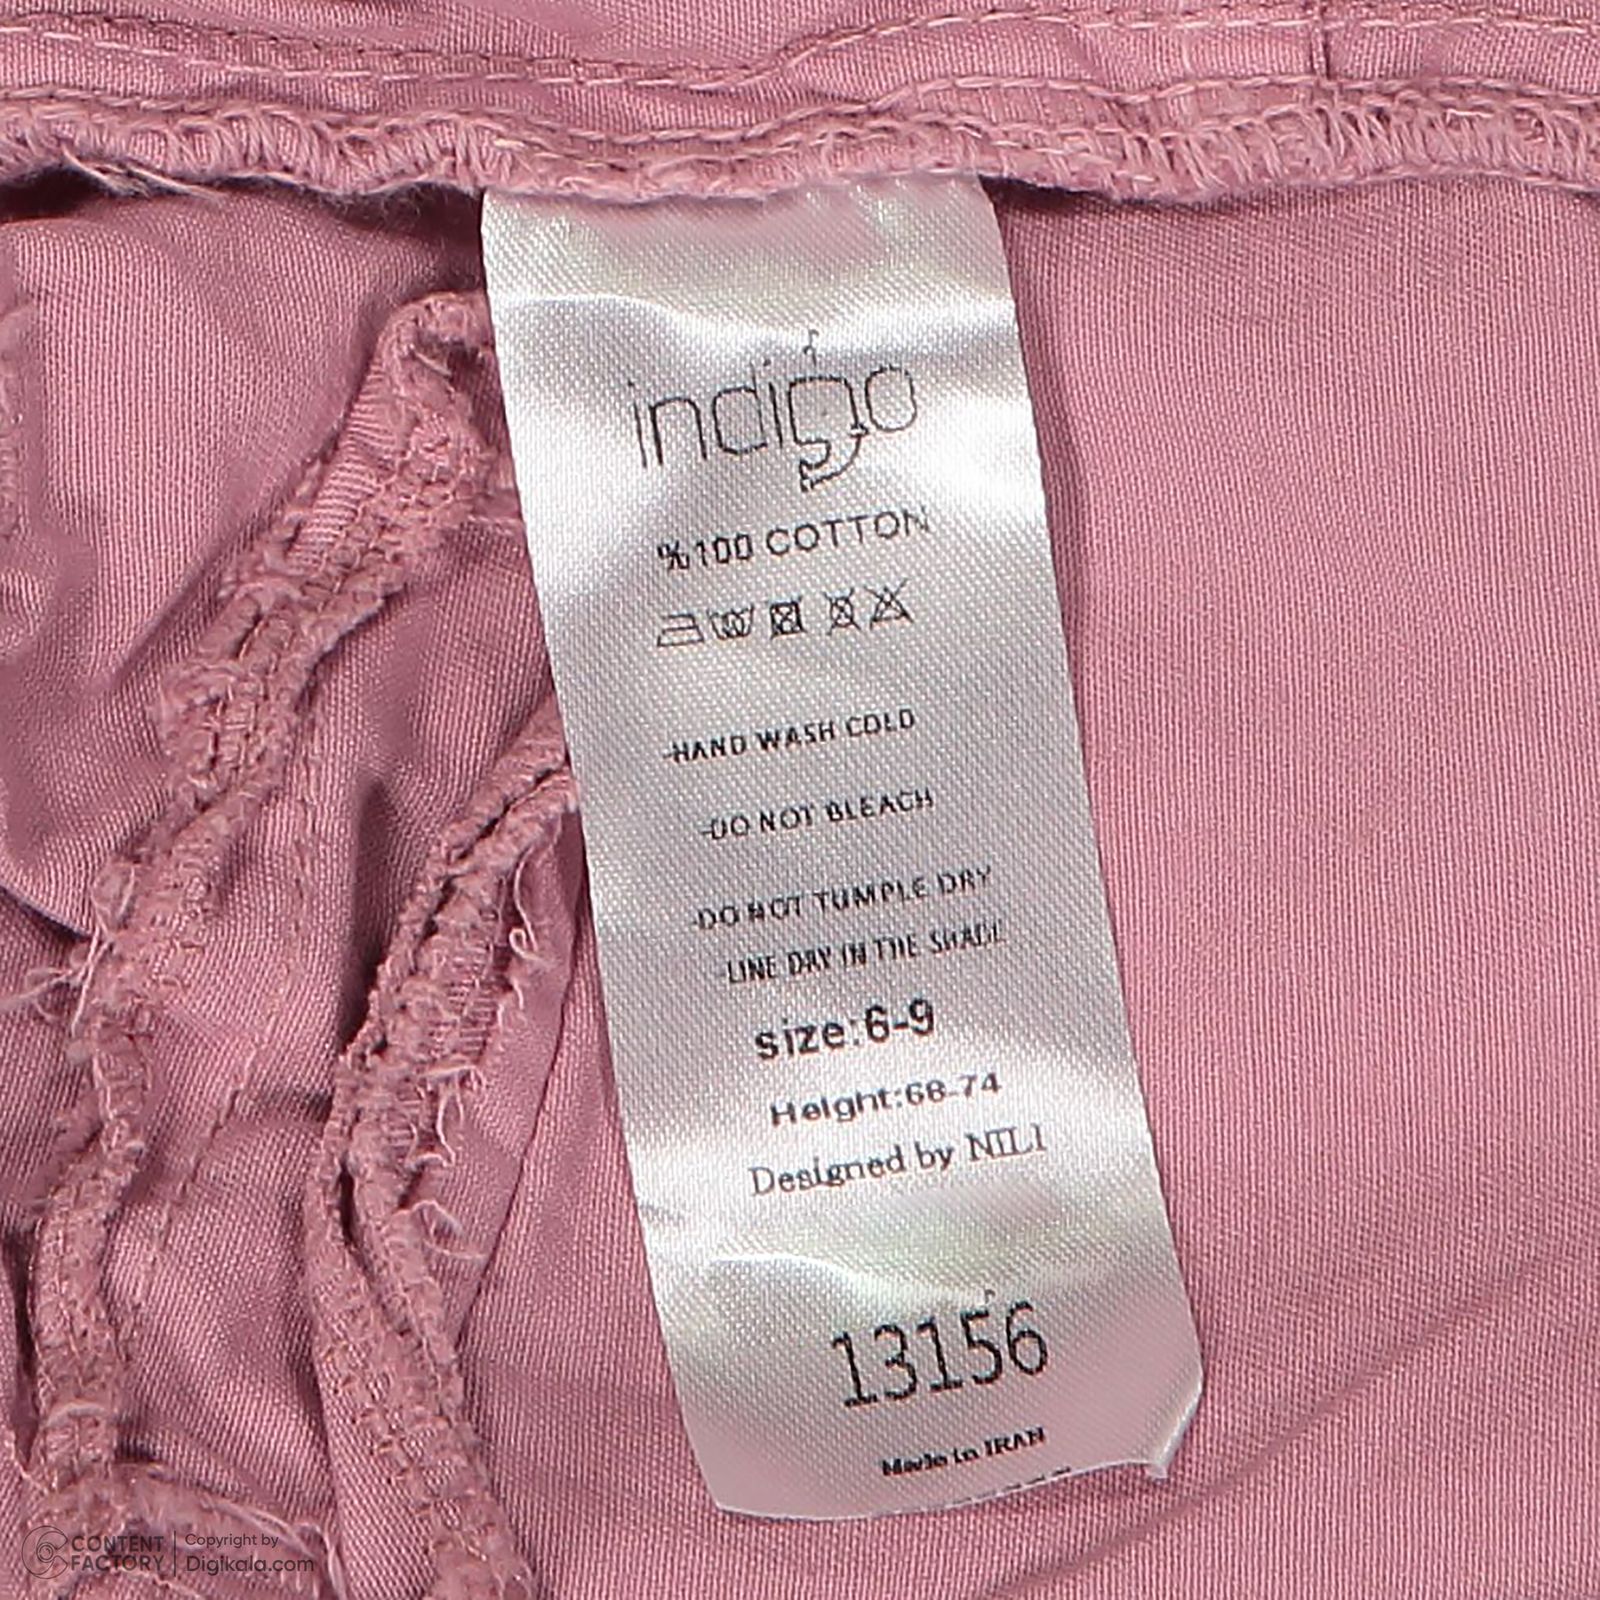 ست 3 تکه لباس نوزادی ایندیگو مدل 13156 رنگ صورتی -  - 10